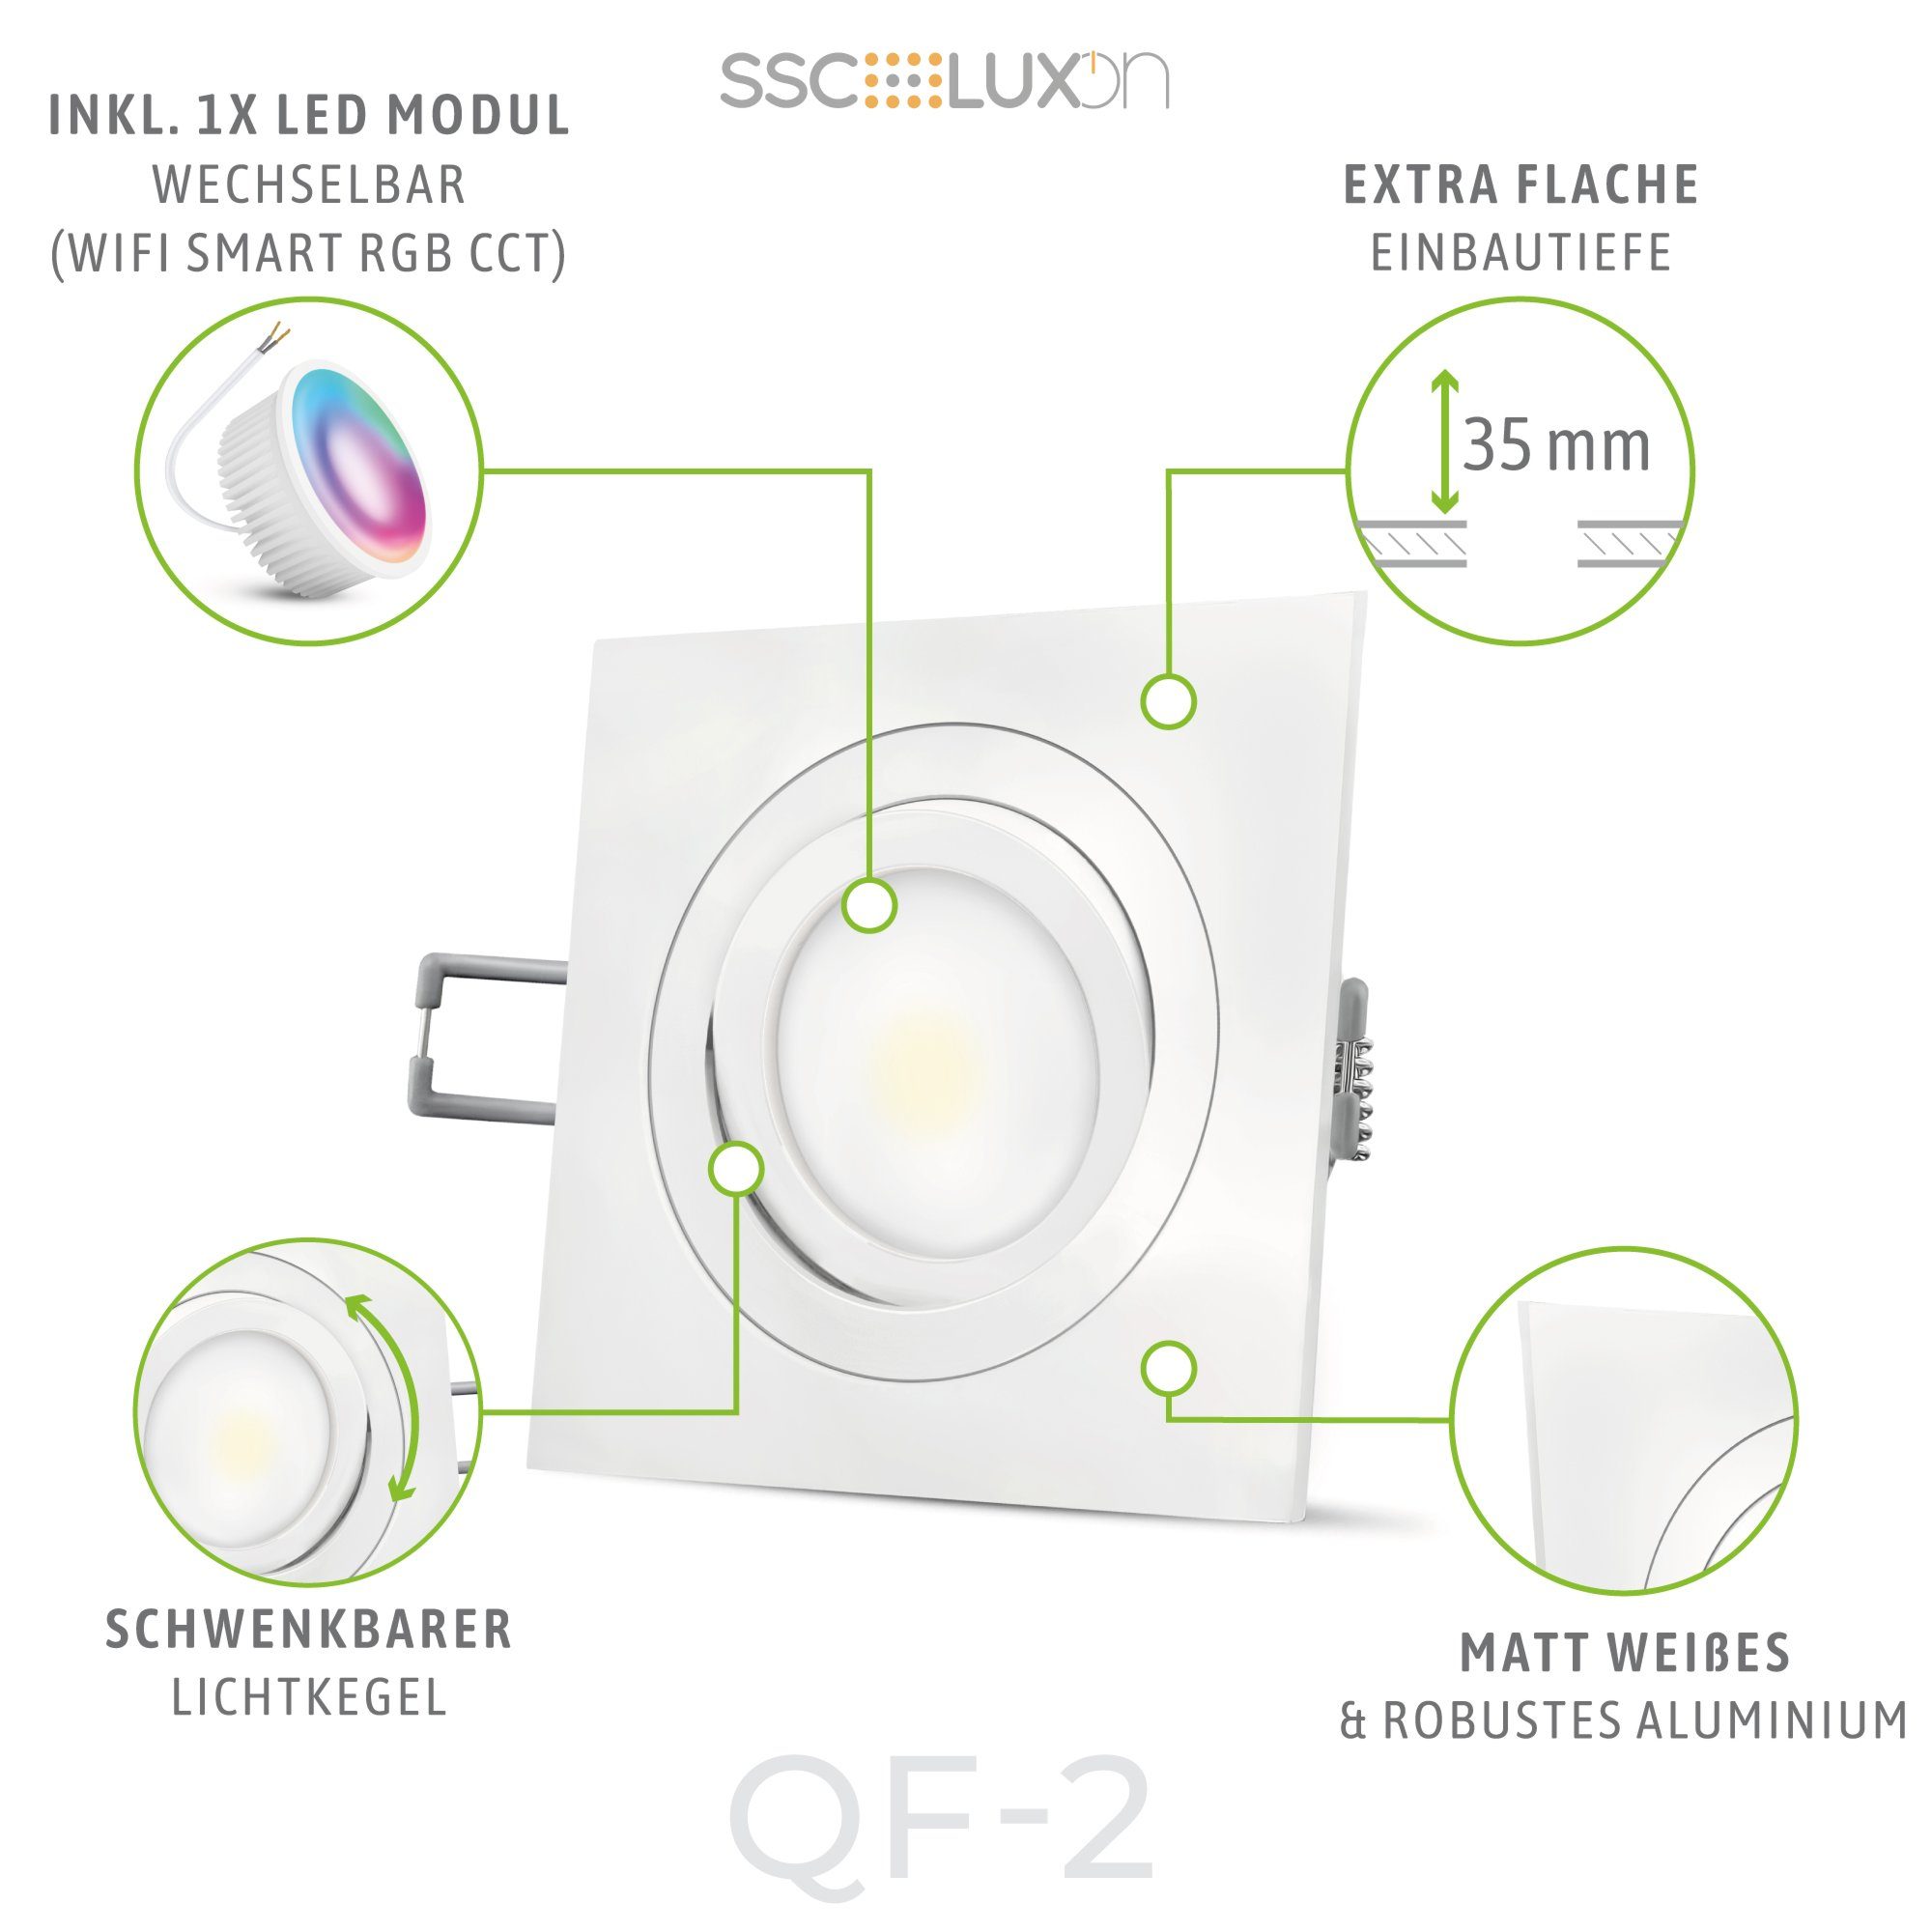 LED LED SSC-LUXon schwenkbar Einbaustrahler dimmbar, RGB flach Modul RGB WiFi mit QF-2 Einbaustrahler 5W